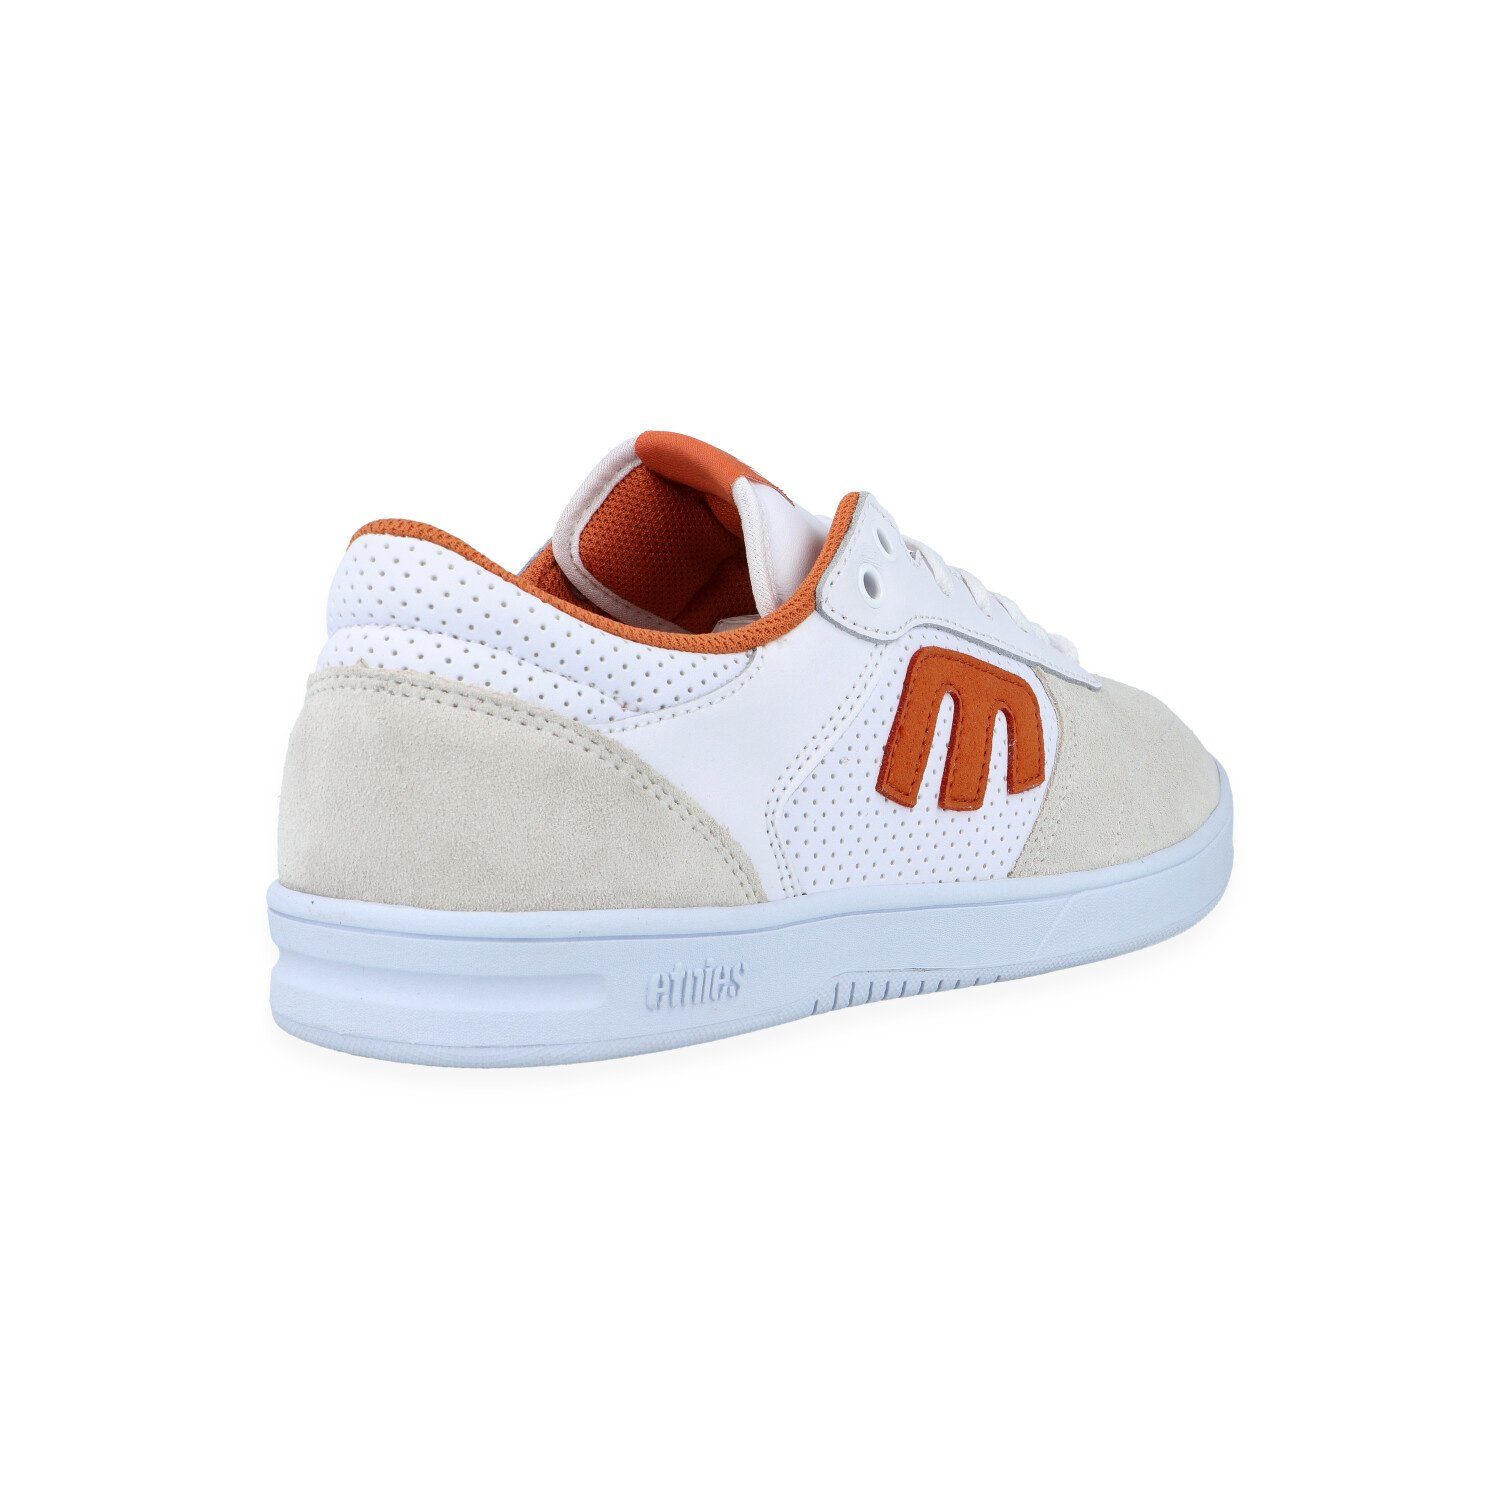 Sneaker Windrow etnies white/orange -